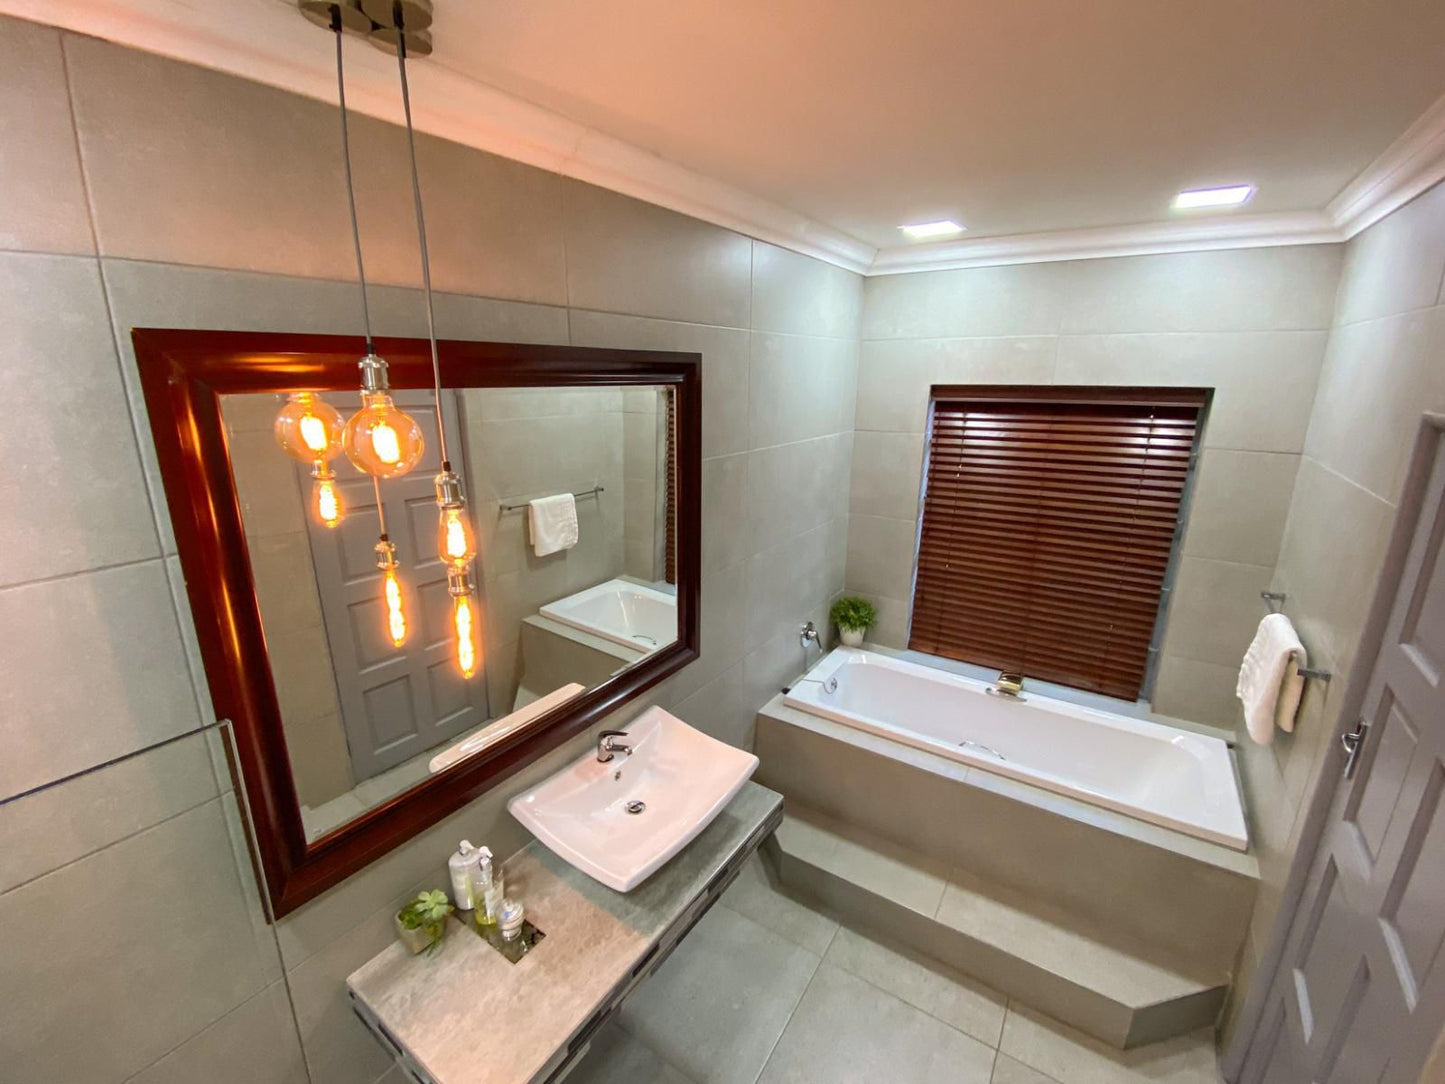 Spacube Luxury Suites And Spa Groenkloof Pretoria Tshwane Gauteng South Africa Bathroom